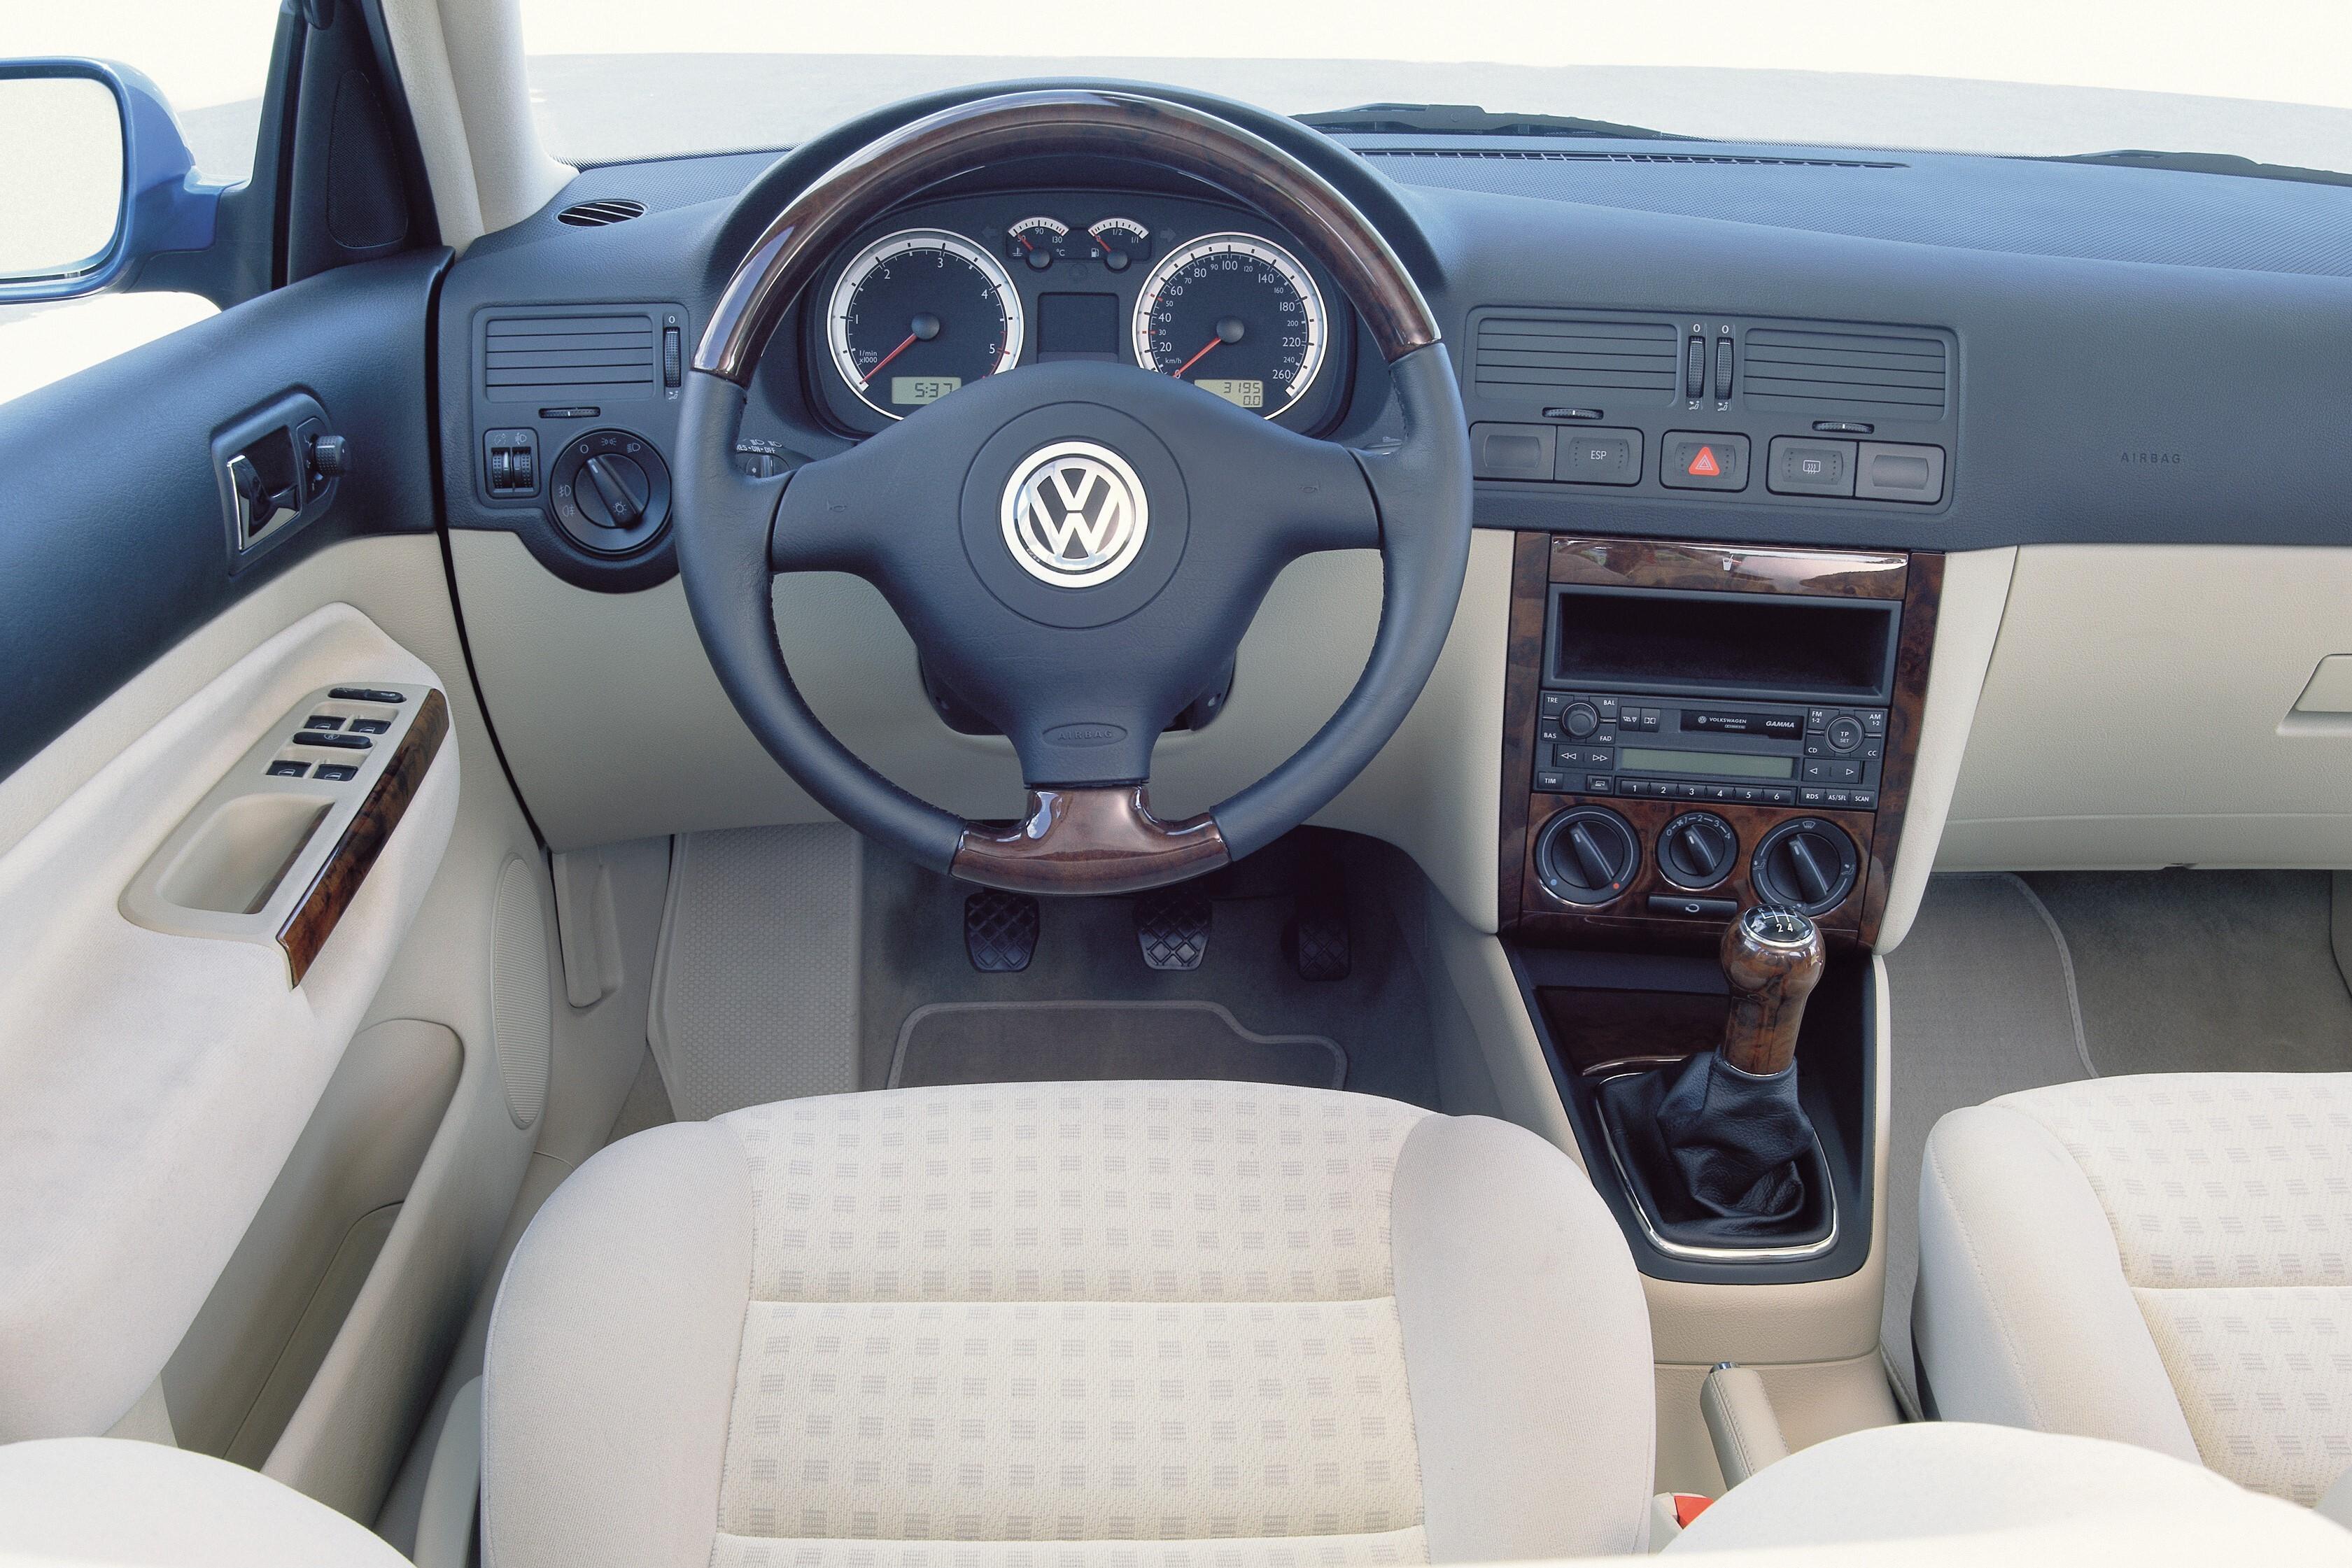 Volkswagen bora 1. Volkswagen Bora 2001 салон. Volkswagen Bora 2003 салон. Volkswagen Bora 2000 салон. Фольксваген Бора 2001 салон.